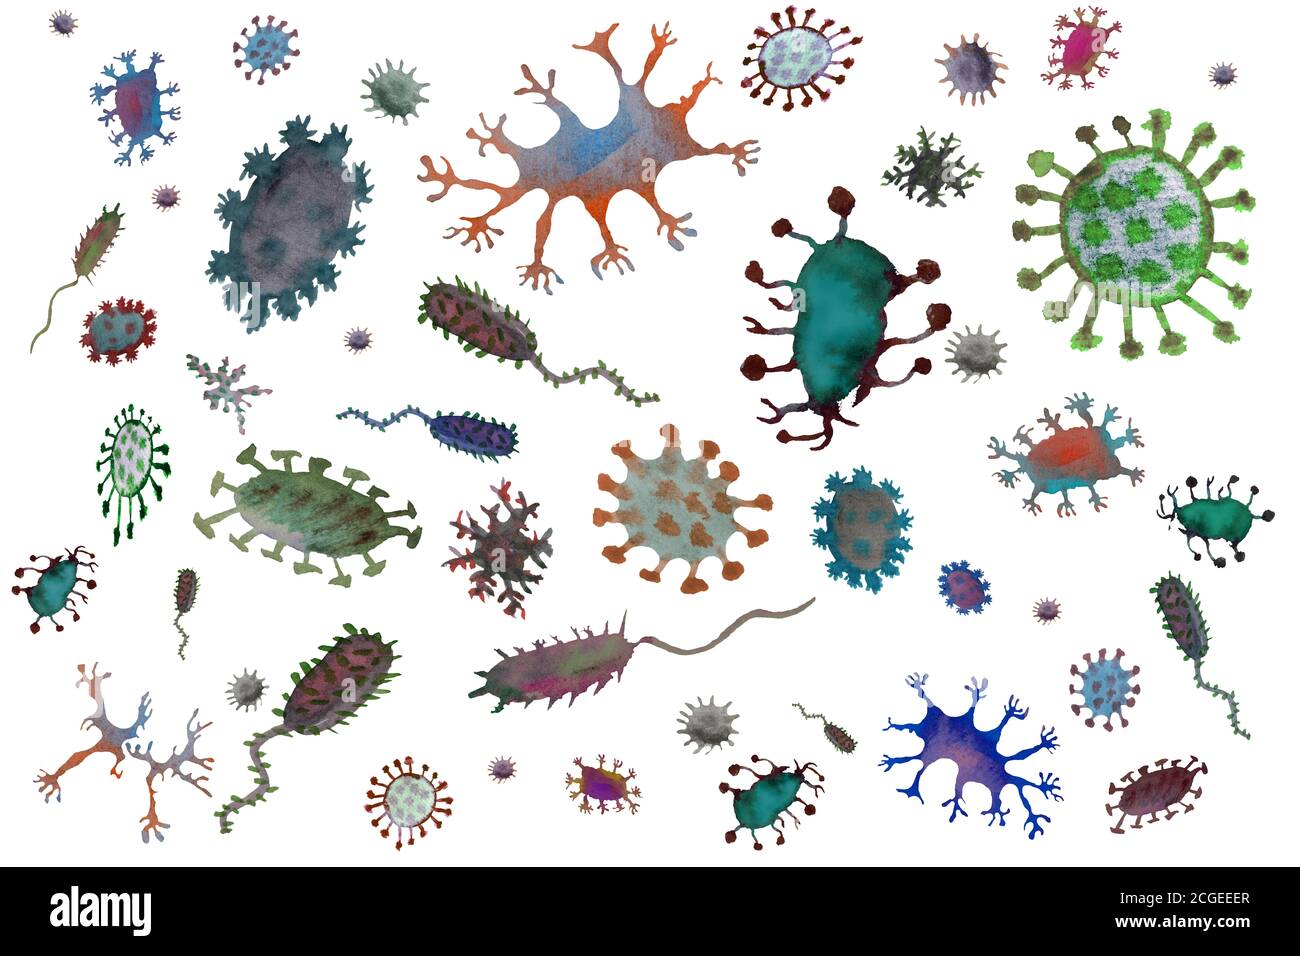 Abbildung eines Bakteriums unter dem Mikroskop auf schwarzem Hintergrund. Mikroben und Viren verschiedener Formen und Farben isolieren. Bakterienzellen, m Stockfoto